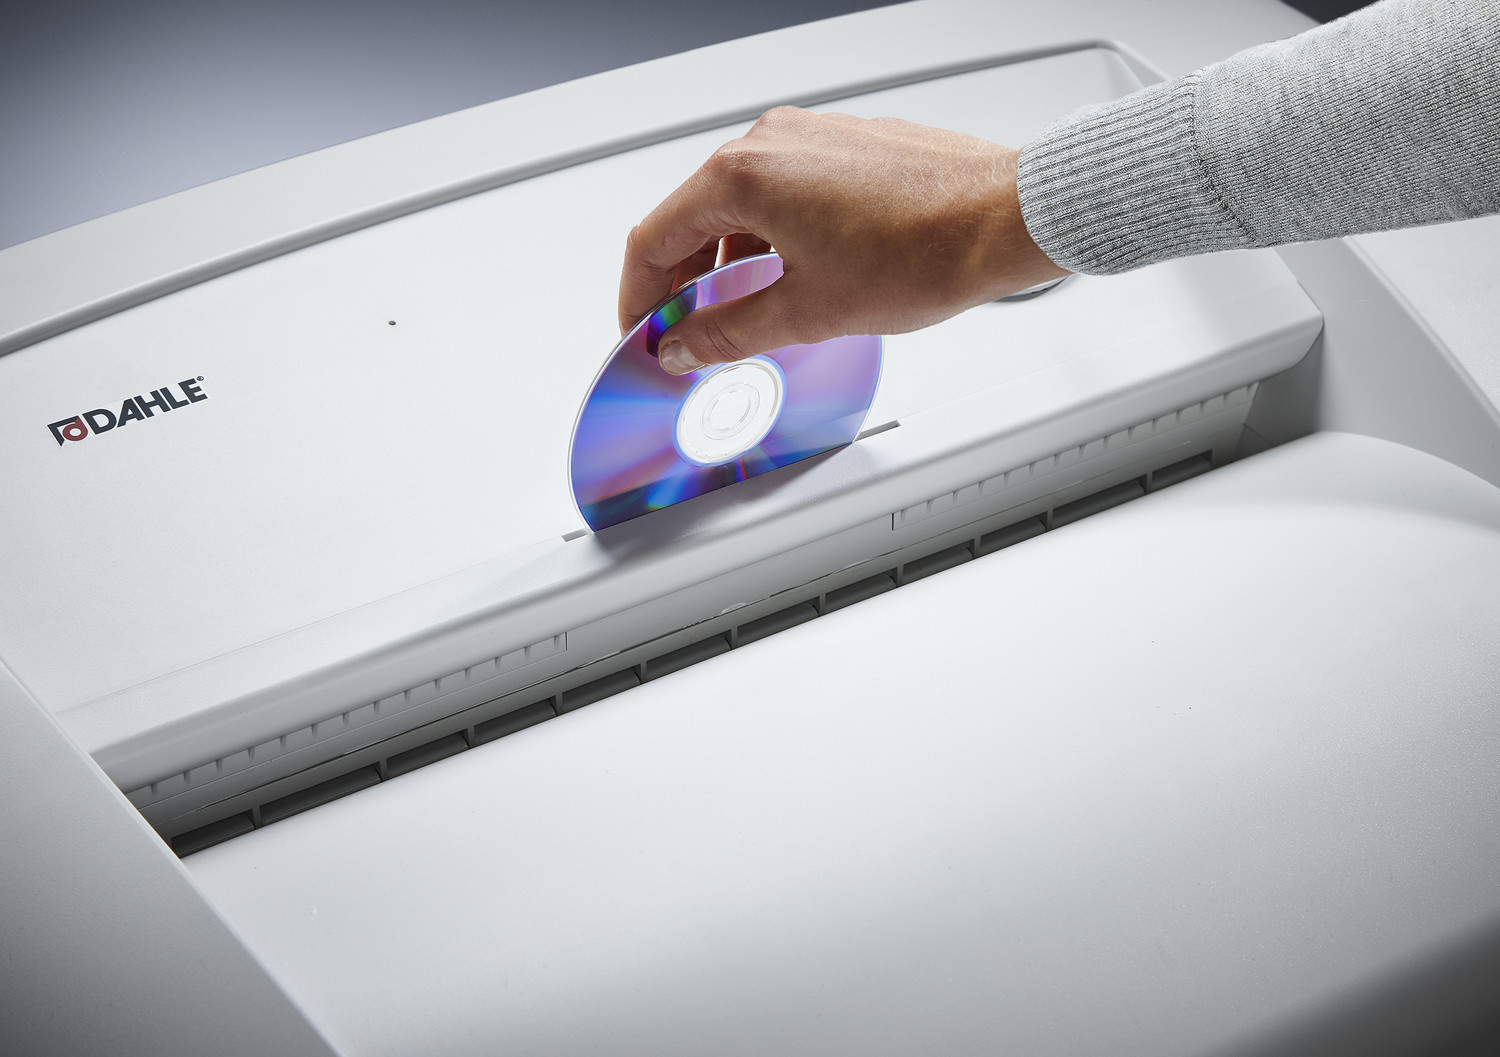 Oddzielny otwór na płyty CD z własnym pojemnikiem na ścinki służący przyjaznej dla środowiska segregacji odpadów i bezpiecznej utylizacji